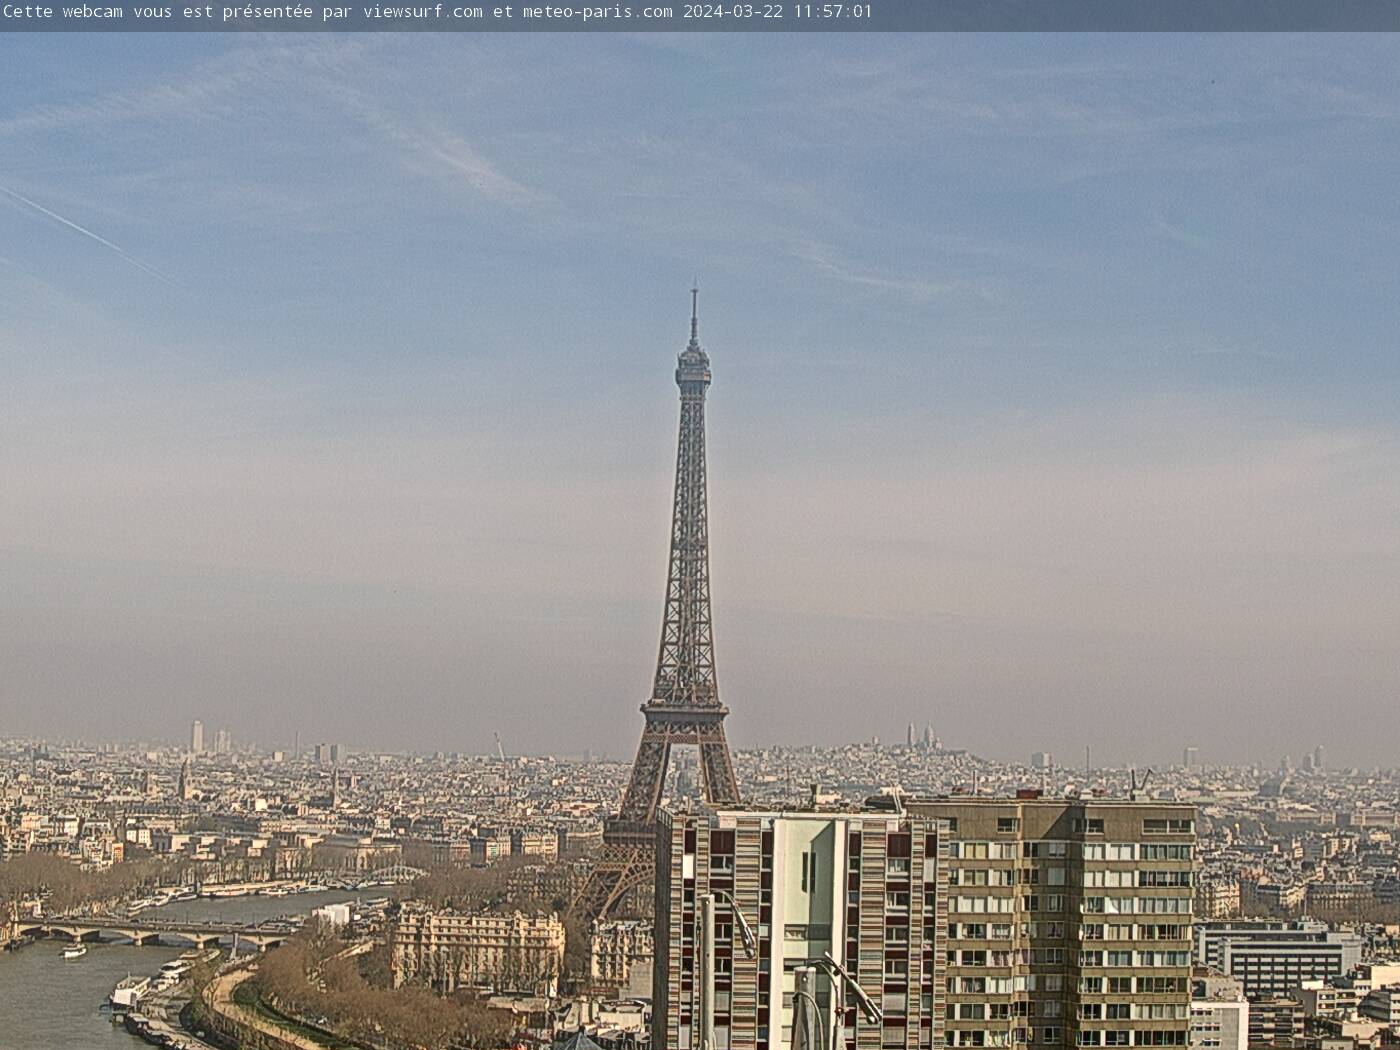 Eiffel Tower, Paris, France - Webcam Image